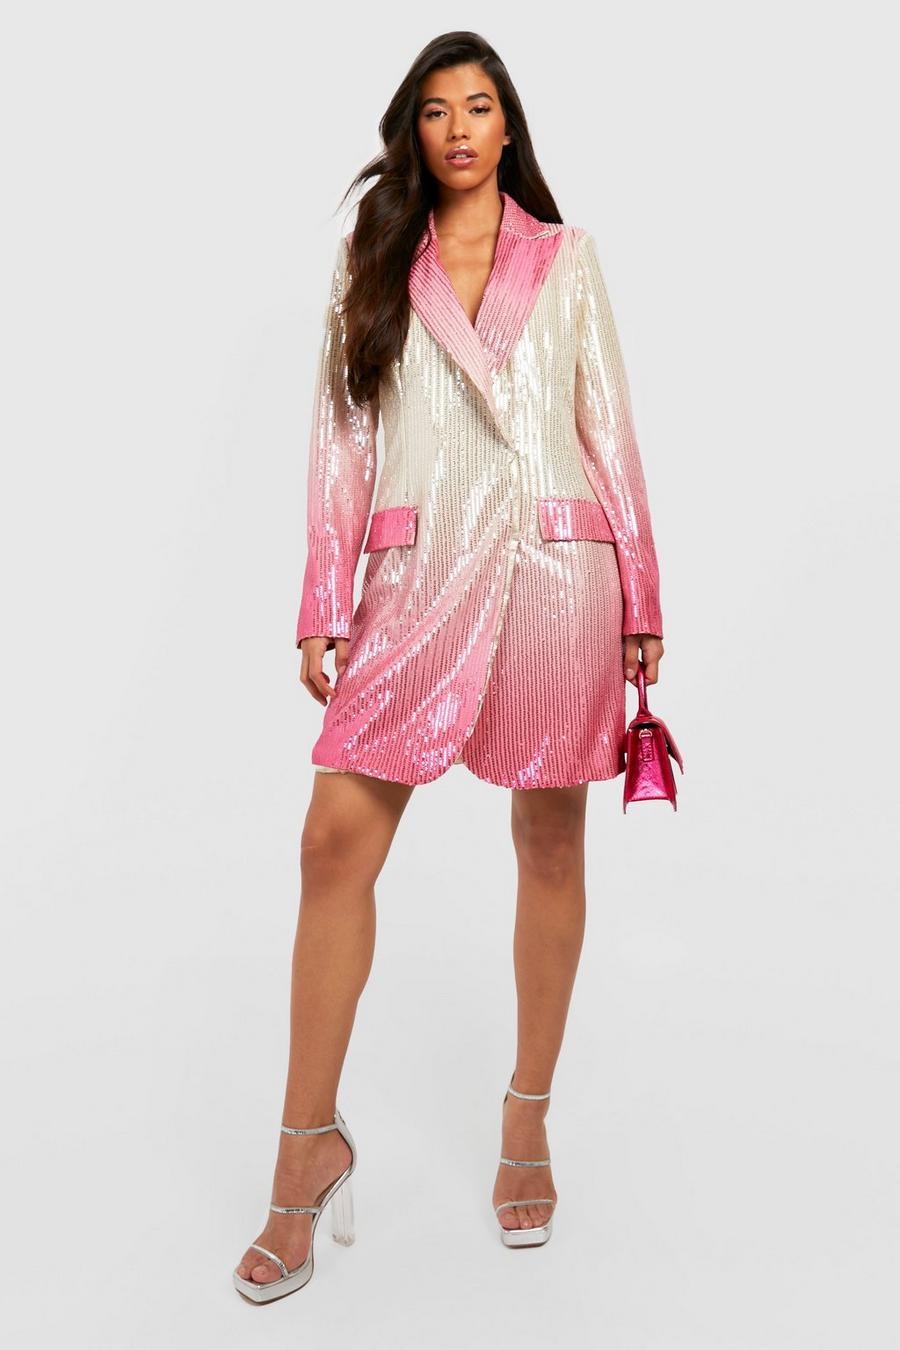 Hot pink Tall Ombre Sequin Blazer Dress